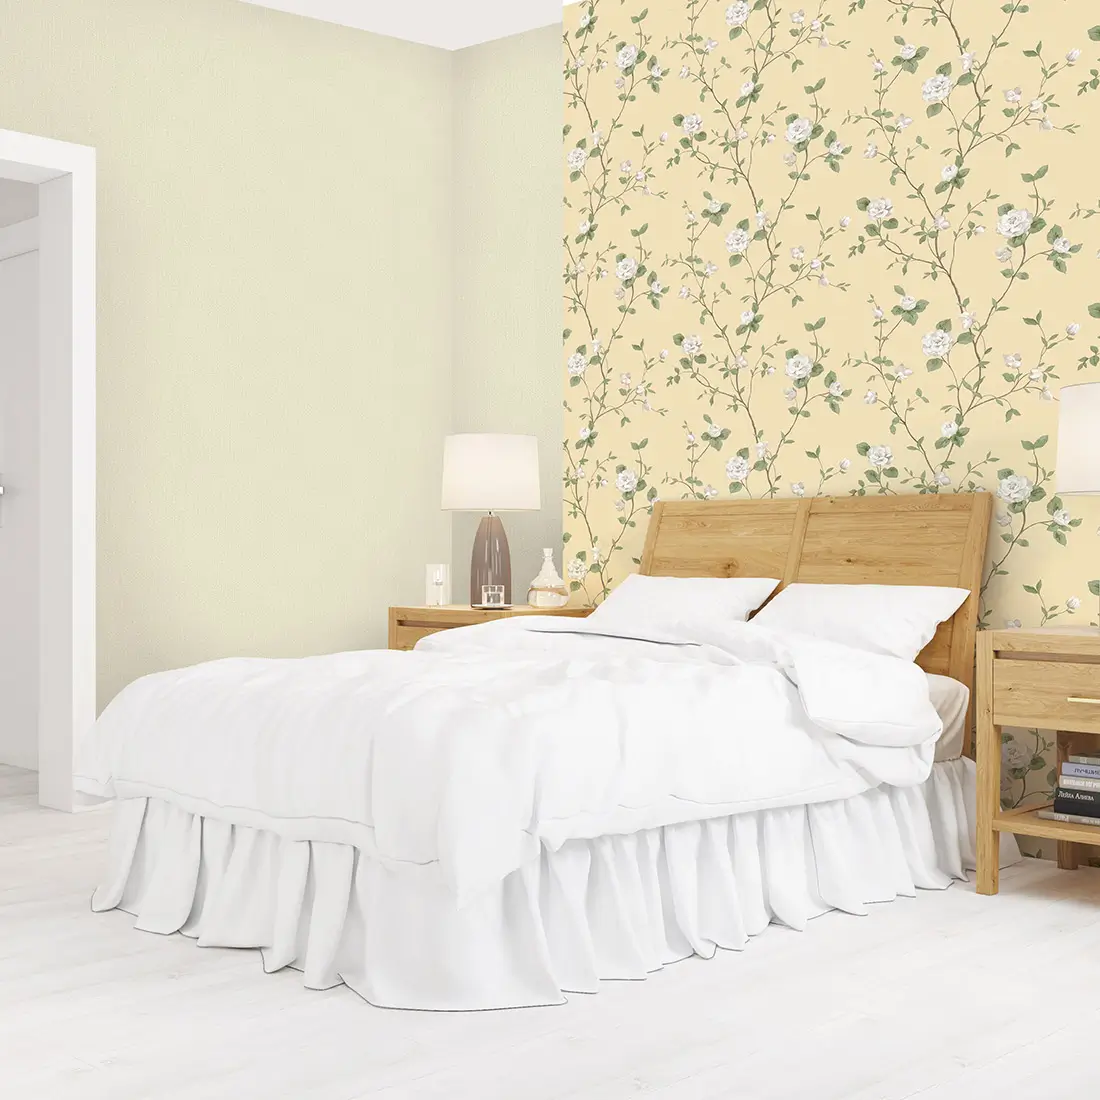 Trang trí phòng ngủ nhỏ cho nữ bằng giấy dán tường đa dạng phong cách